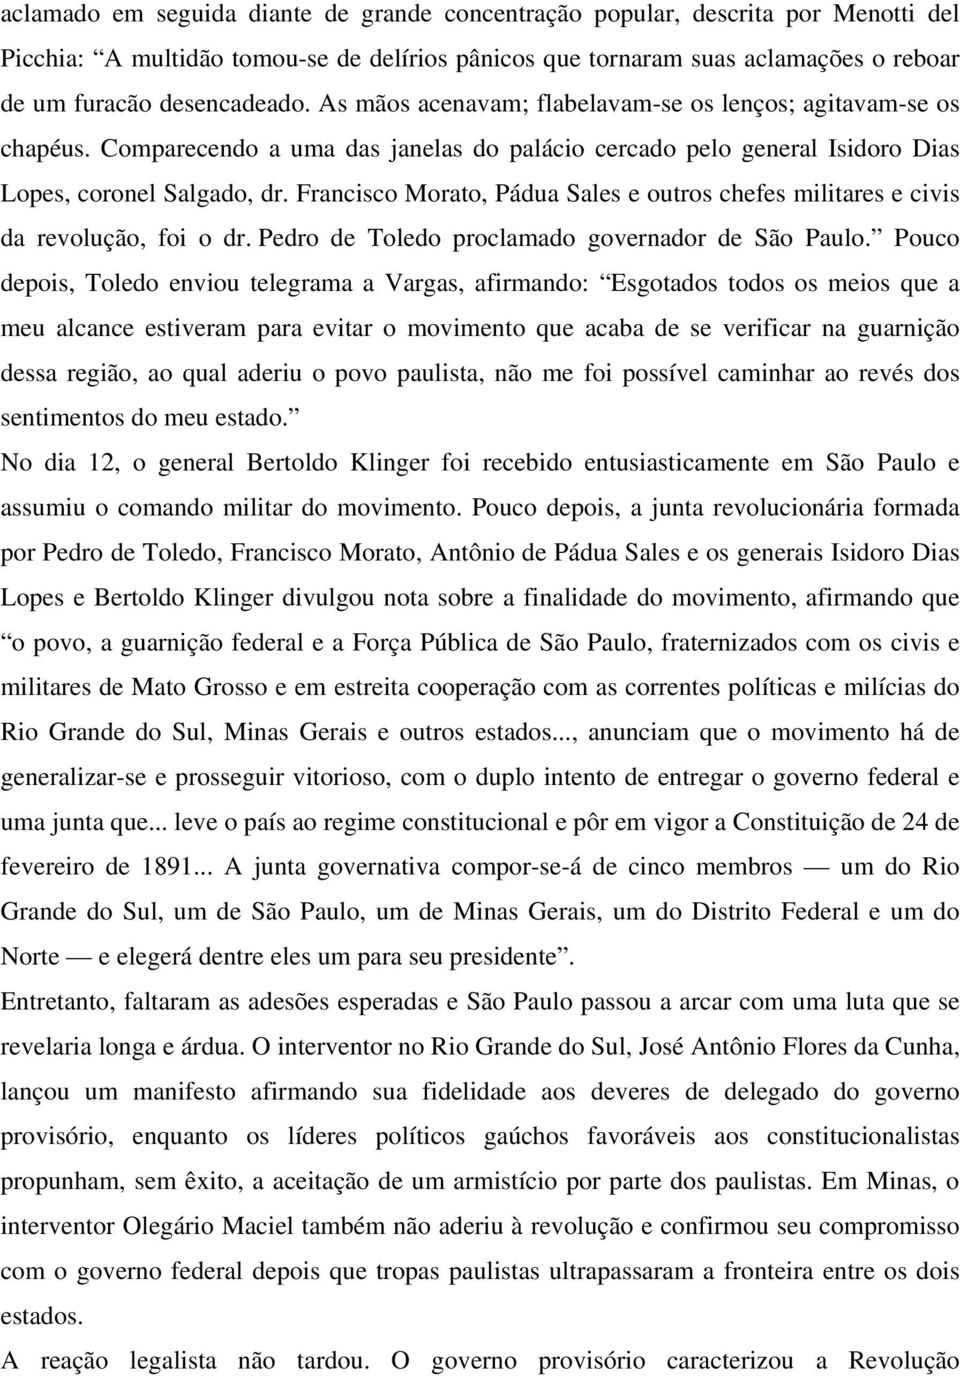 Francisco Morato, Pádua Sales e outros chefes militares e civis da revolução, foi o dr. Pedro de Toledo proclamado governador de São Paulo.